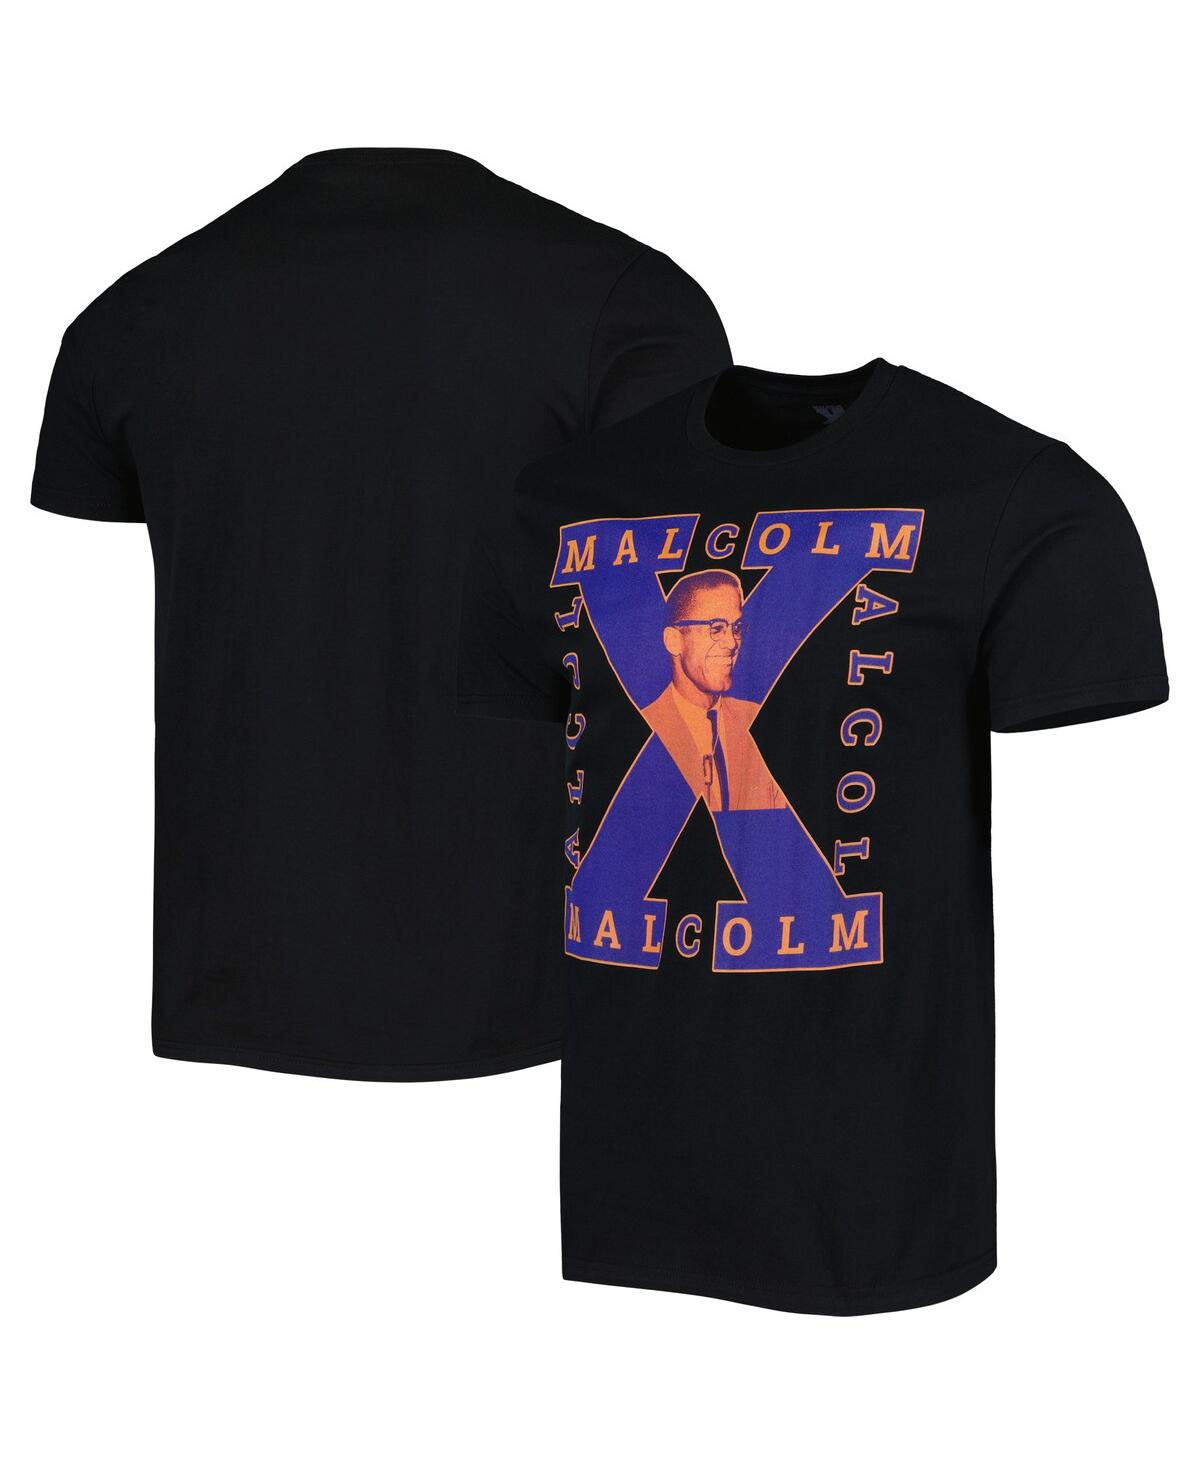 Shop Philcos Men's And Women's Black Malcolm X Graphic T-shirt